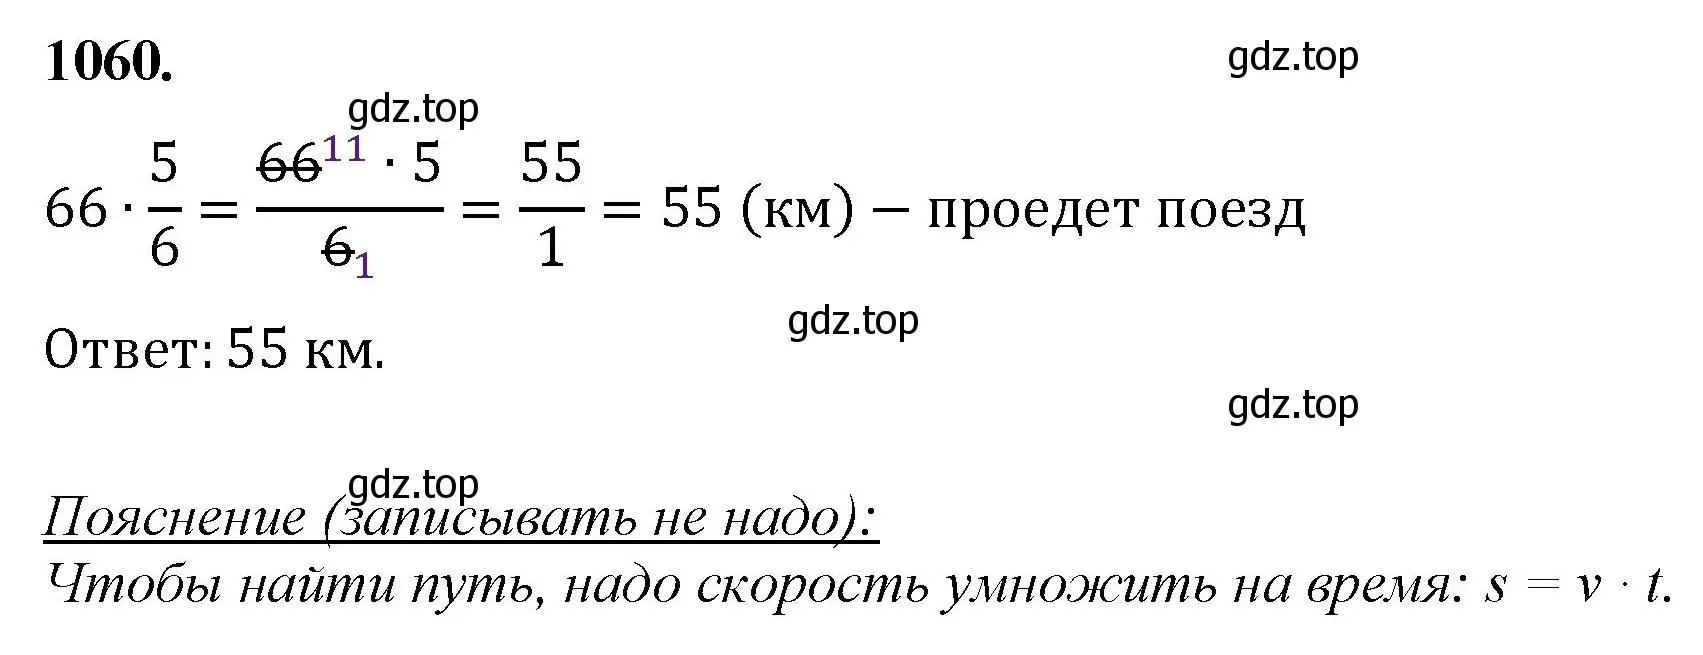 Решение номер 1060 (страница 241) гдз по математике 5 класс Мерзляк, Полонский, учебник